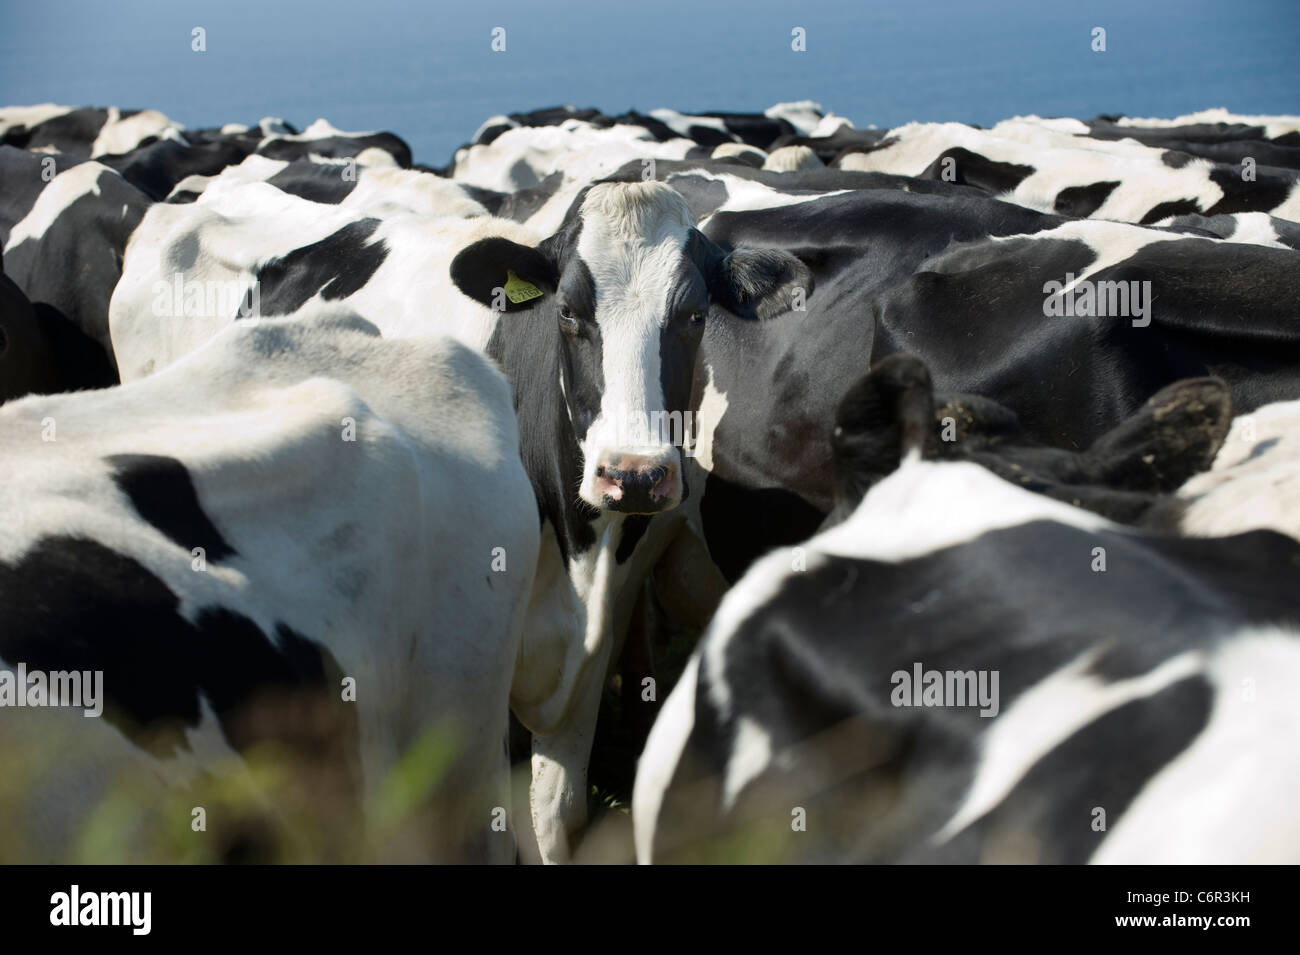 Tagged une femelle noir et blanc vache frisonne regarde directement dans la caméra d'un tassement de la Porcupine. Banque D'Images